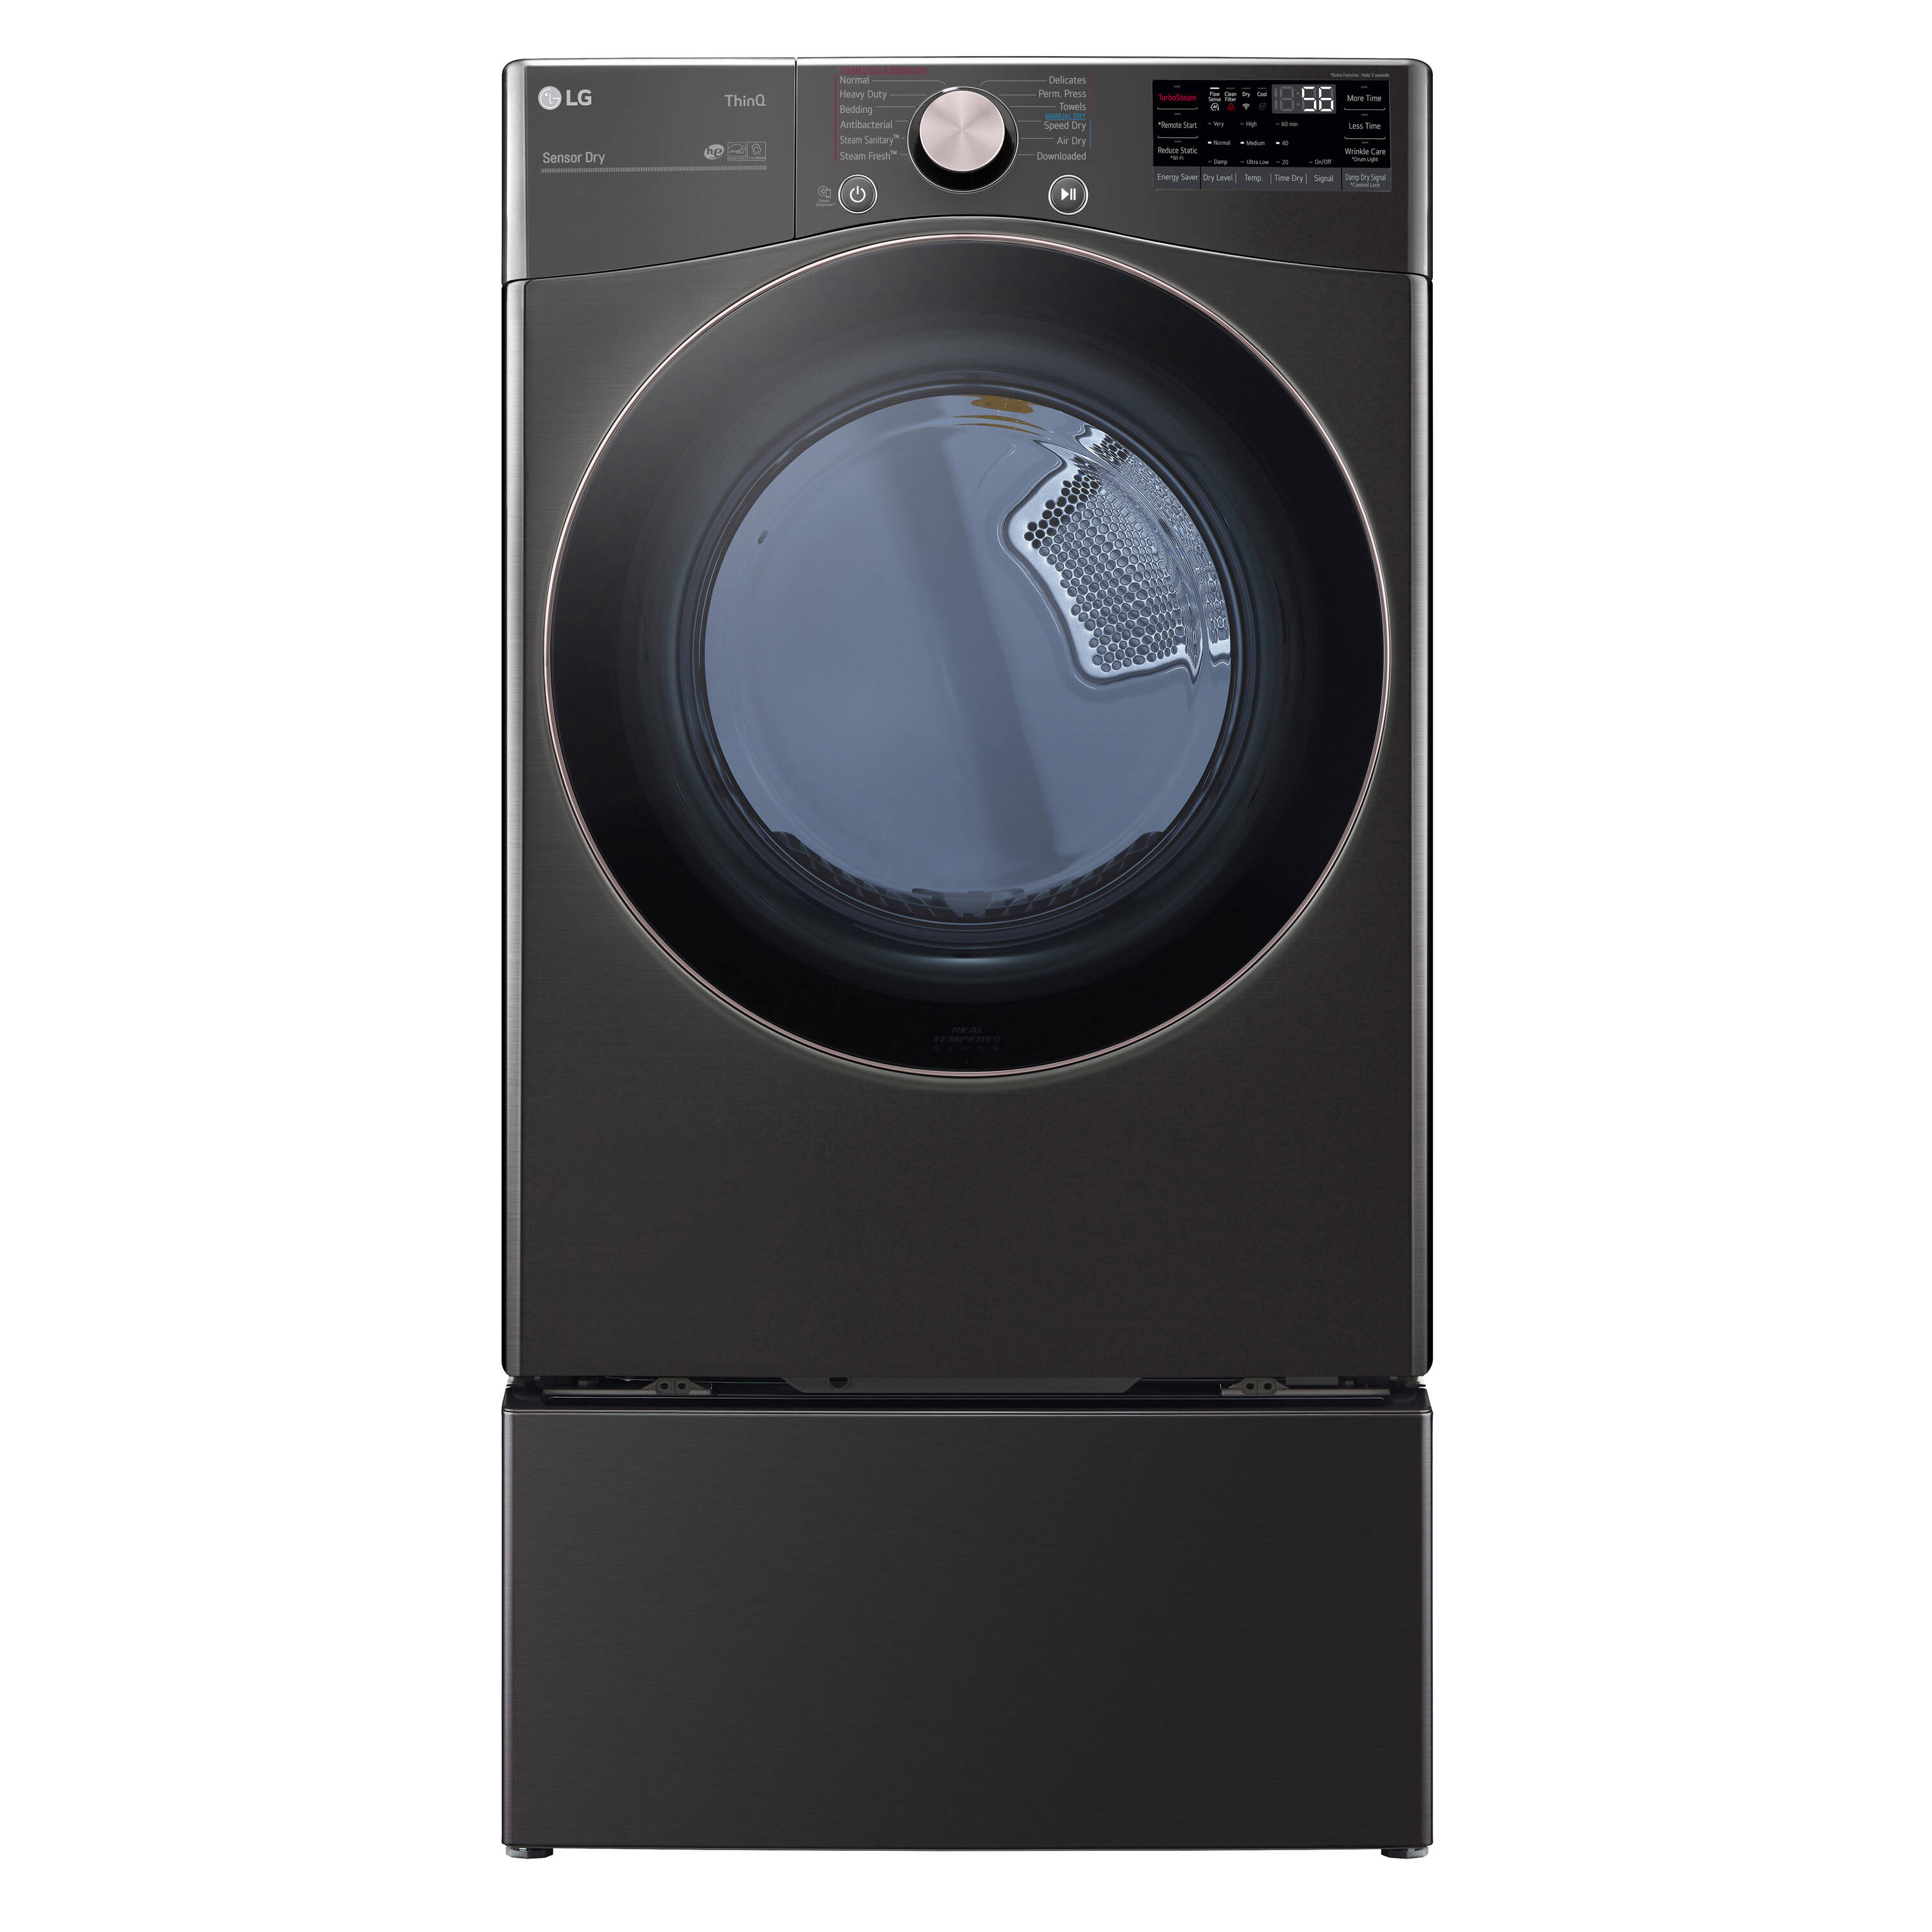 LG “True Steam” Front Load Dryer – Big Reuse